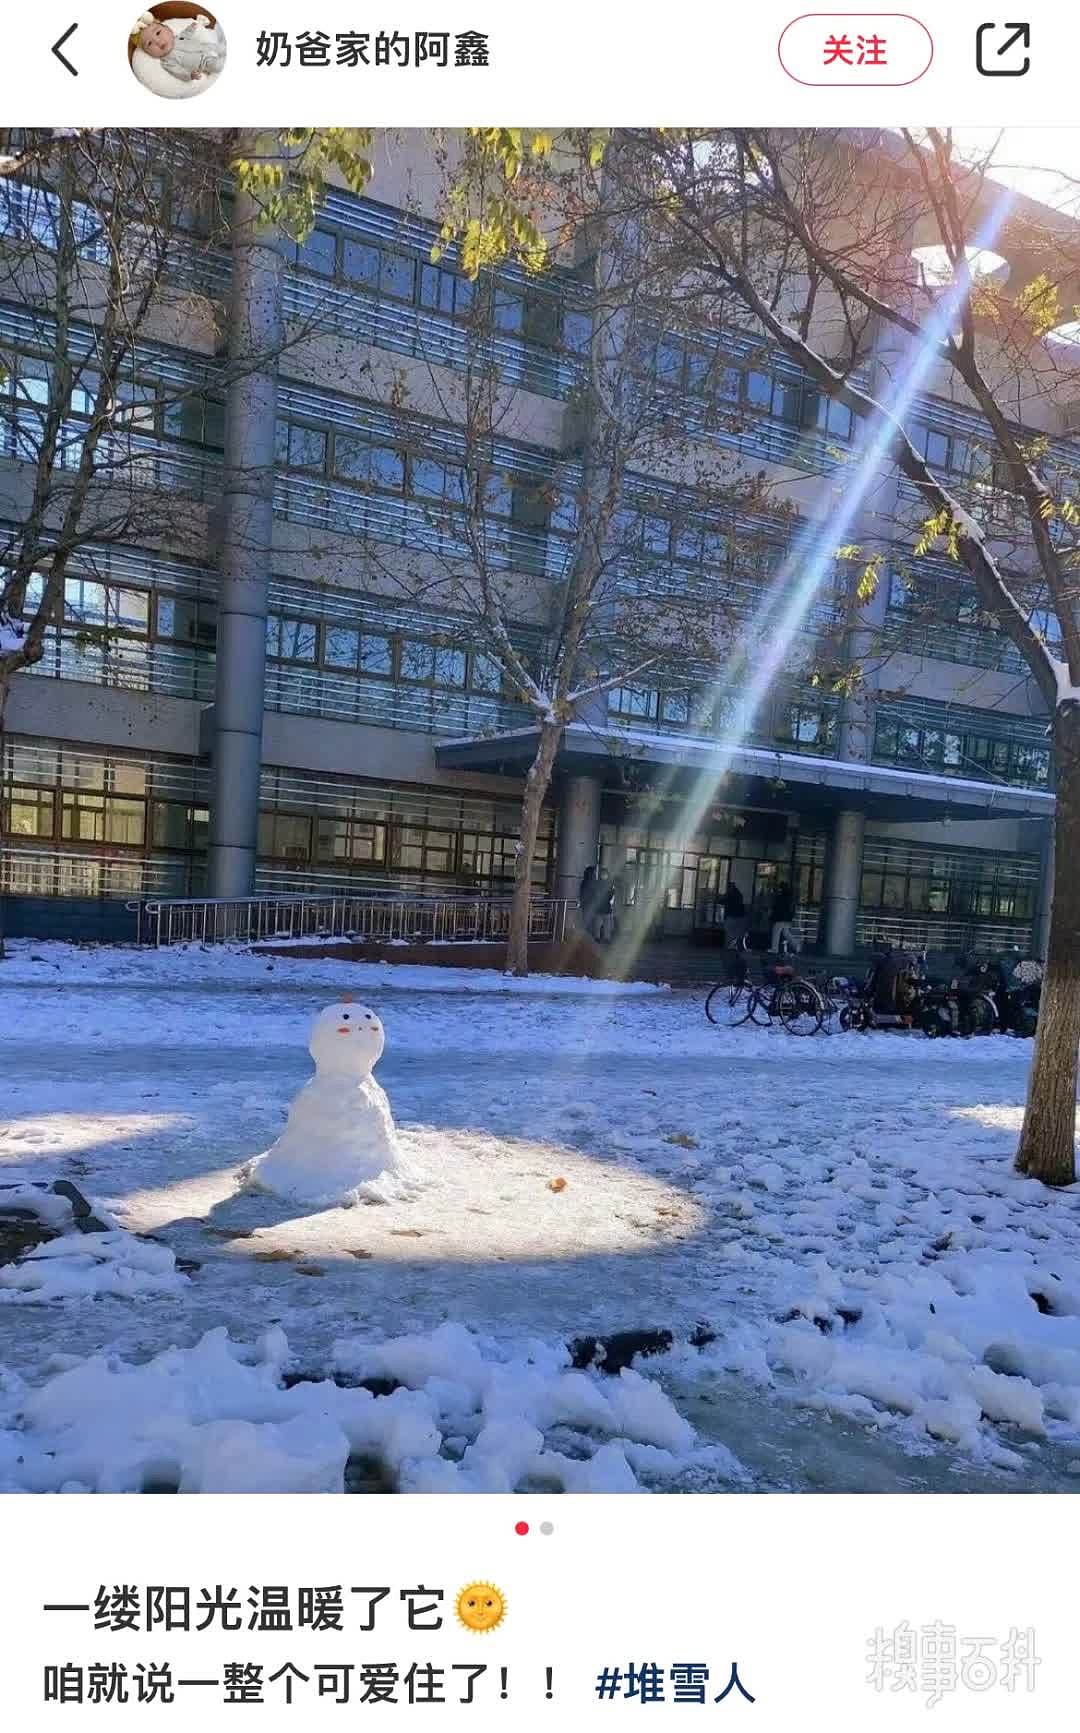 第一次沐浴阳光的雪人